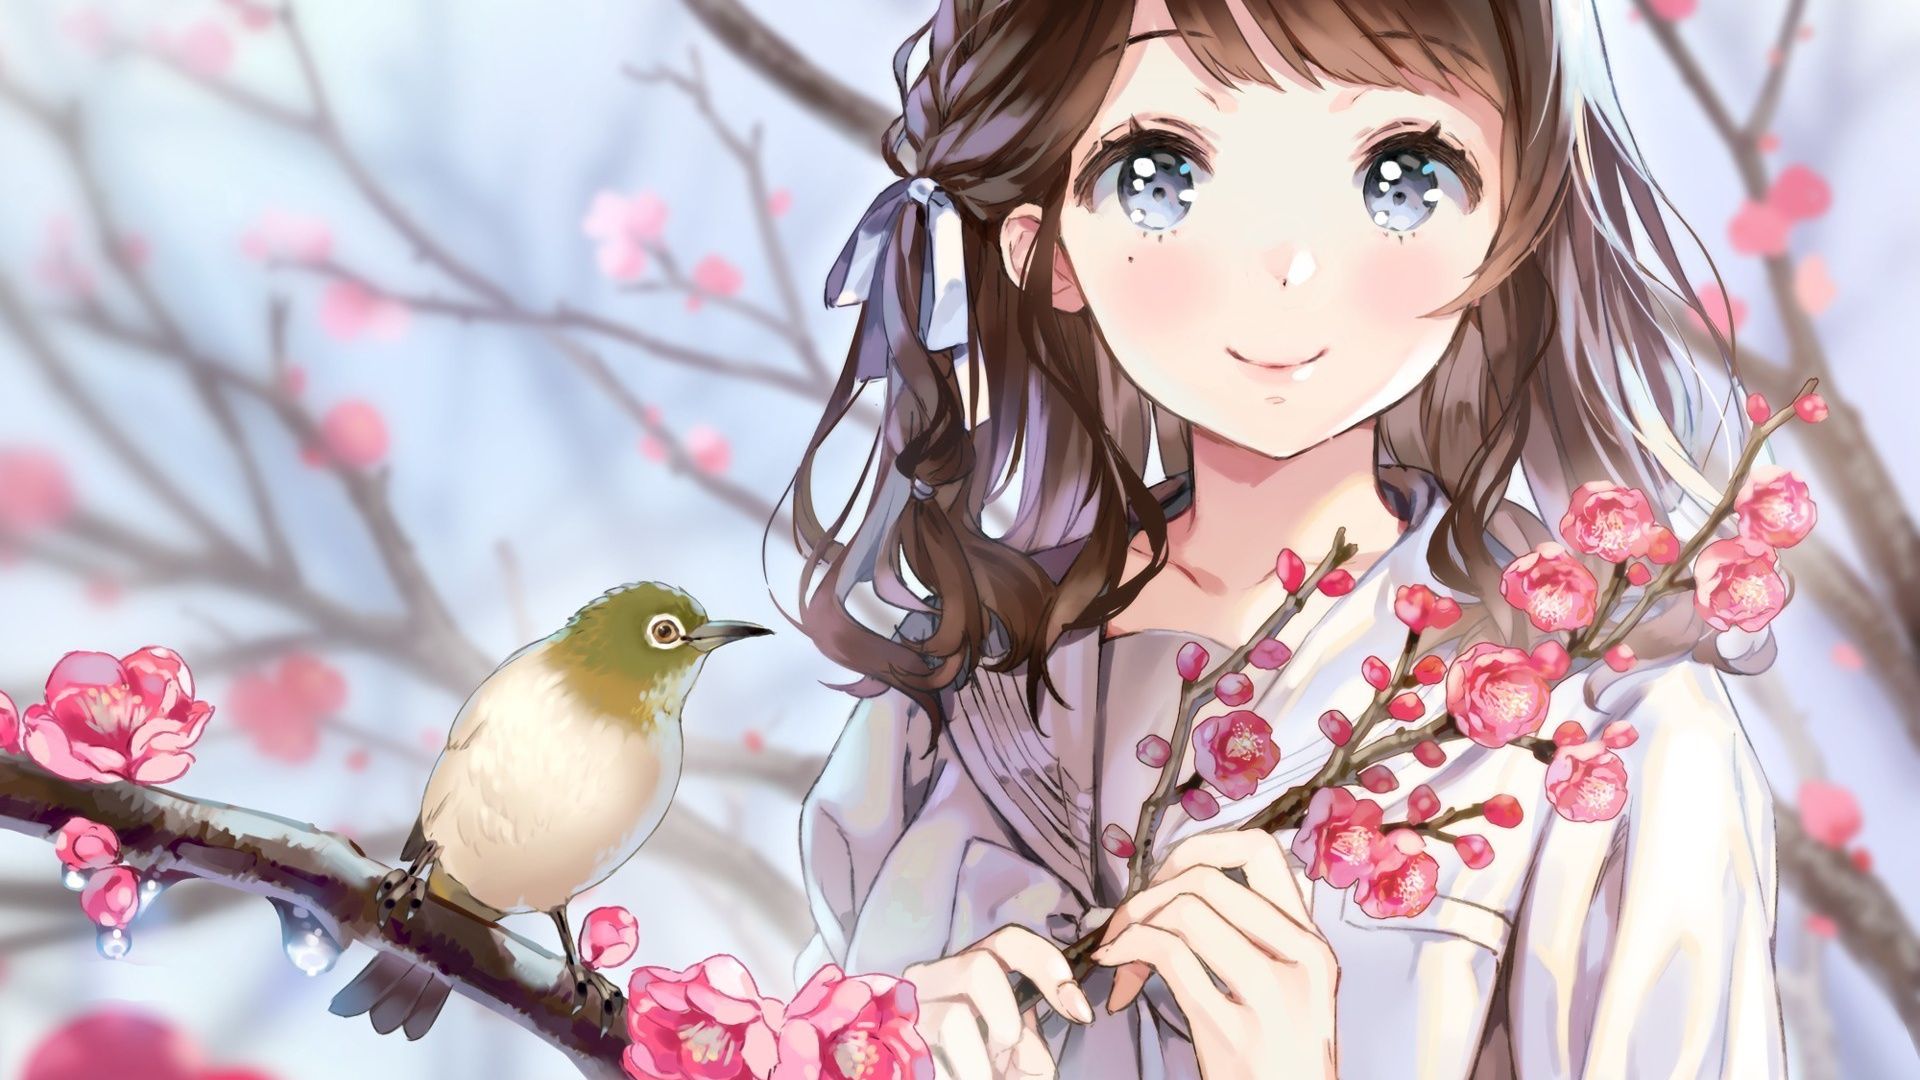 Anime Anime Girls Birds Flowers Trees Cherry Blossom Smiling School Uniform Brunette Cropped Artwork 1920x1080